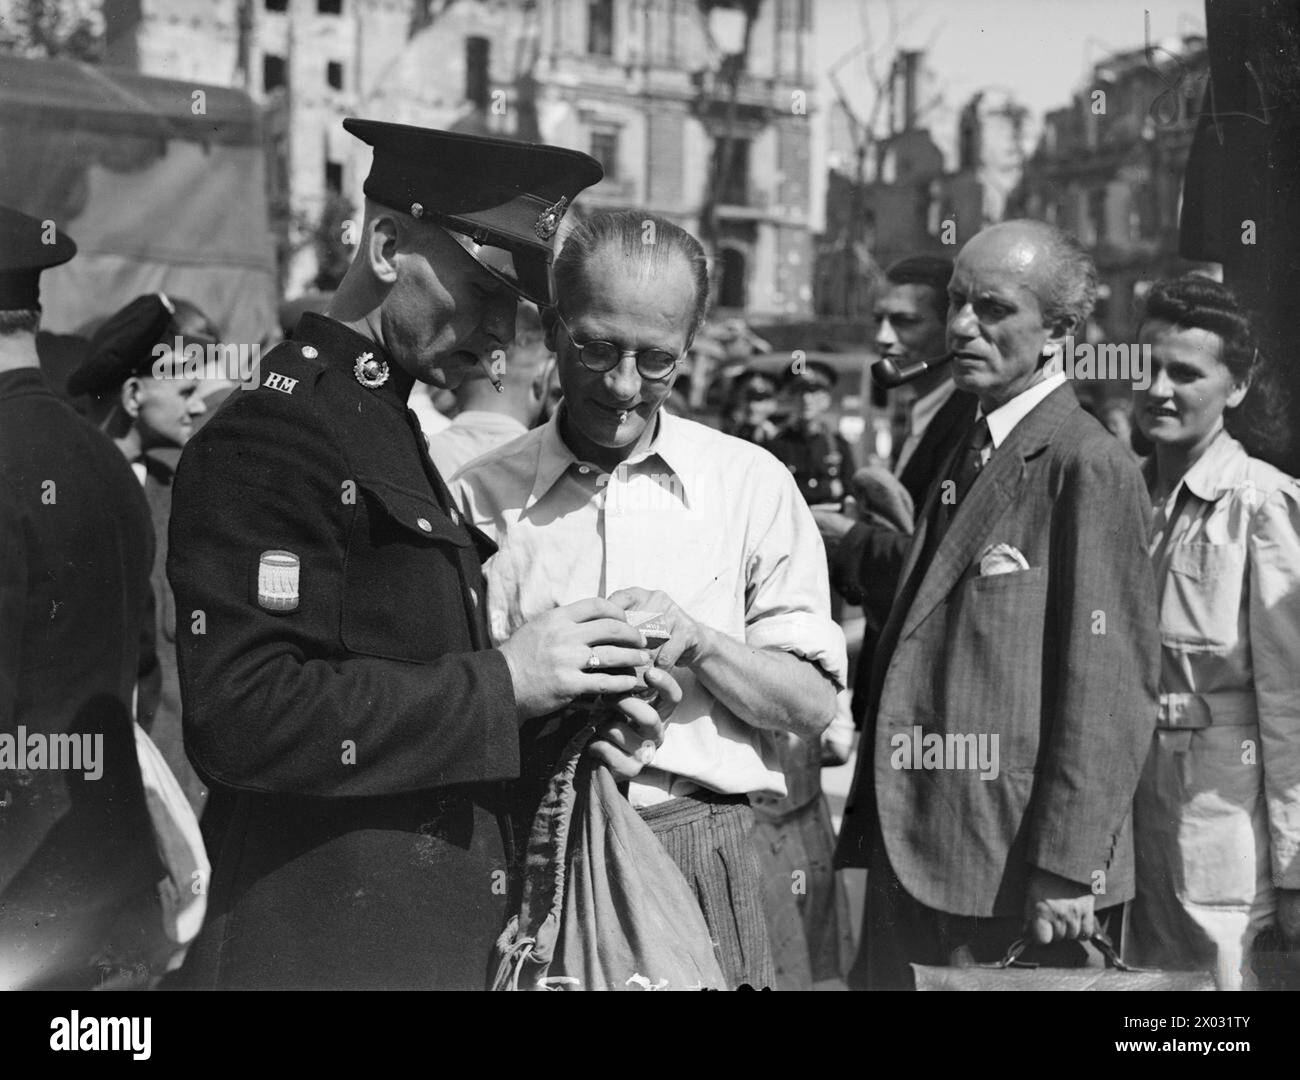 UOMINI DELLA ROYAL NAVY E DEI ROYAL MARINES A BERLINO. LUGLIO 1945, DURANTE UNA VISITA A BERLINO DEGLI UOMINI DELLA ROYAL NAVY E DEI ROYAL MARINES. - Un Royal Marine che compra un film per la sua macchina fotografica da un commerciante tedesco vicino alla Cancelleria Foto Stock